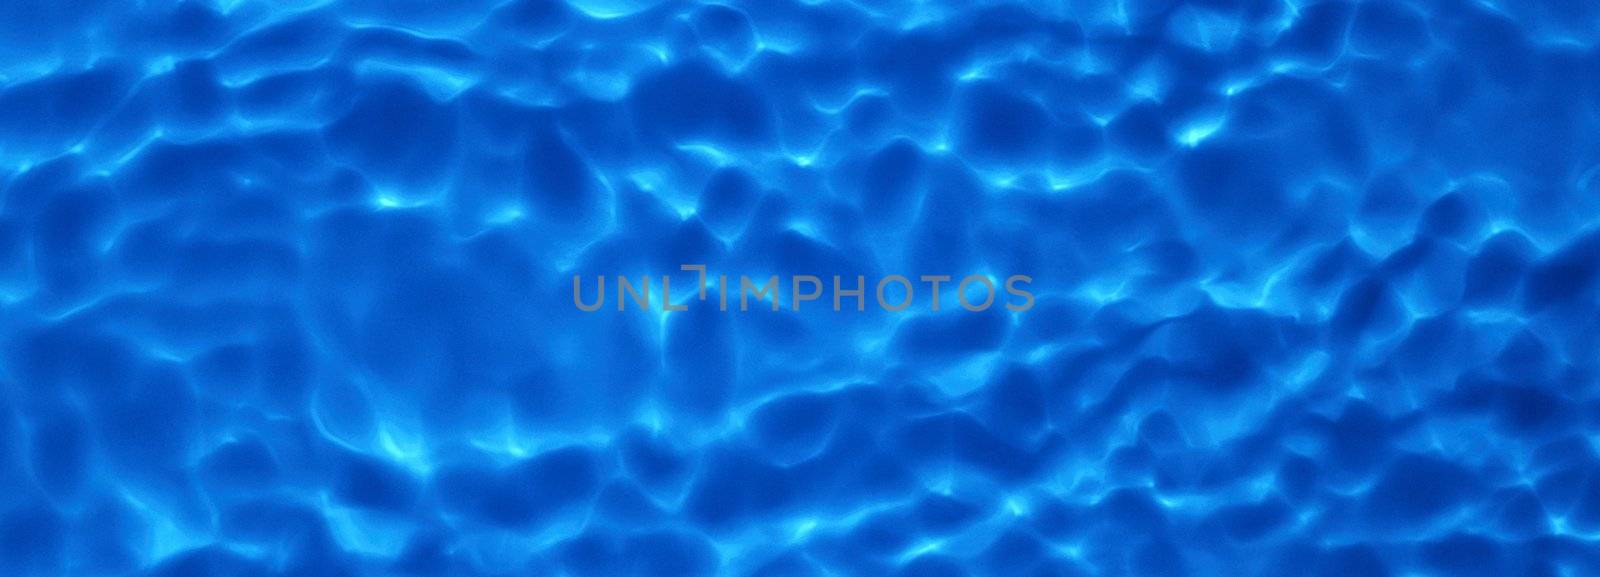 blue water by ozaiachin